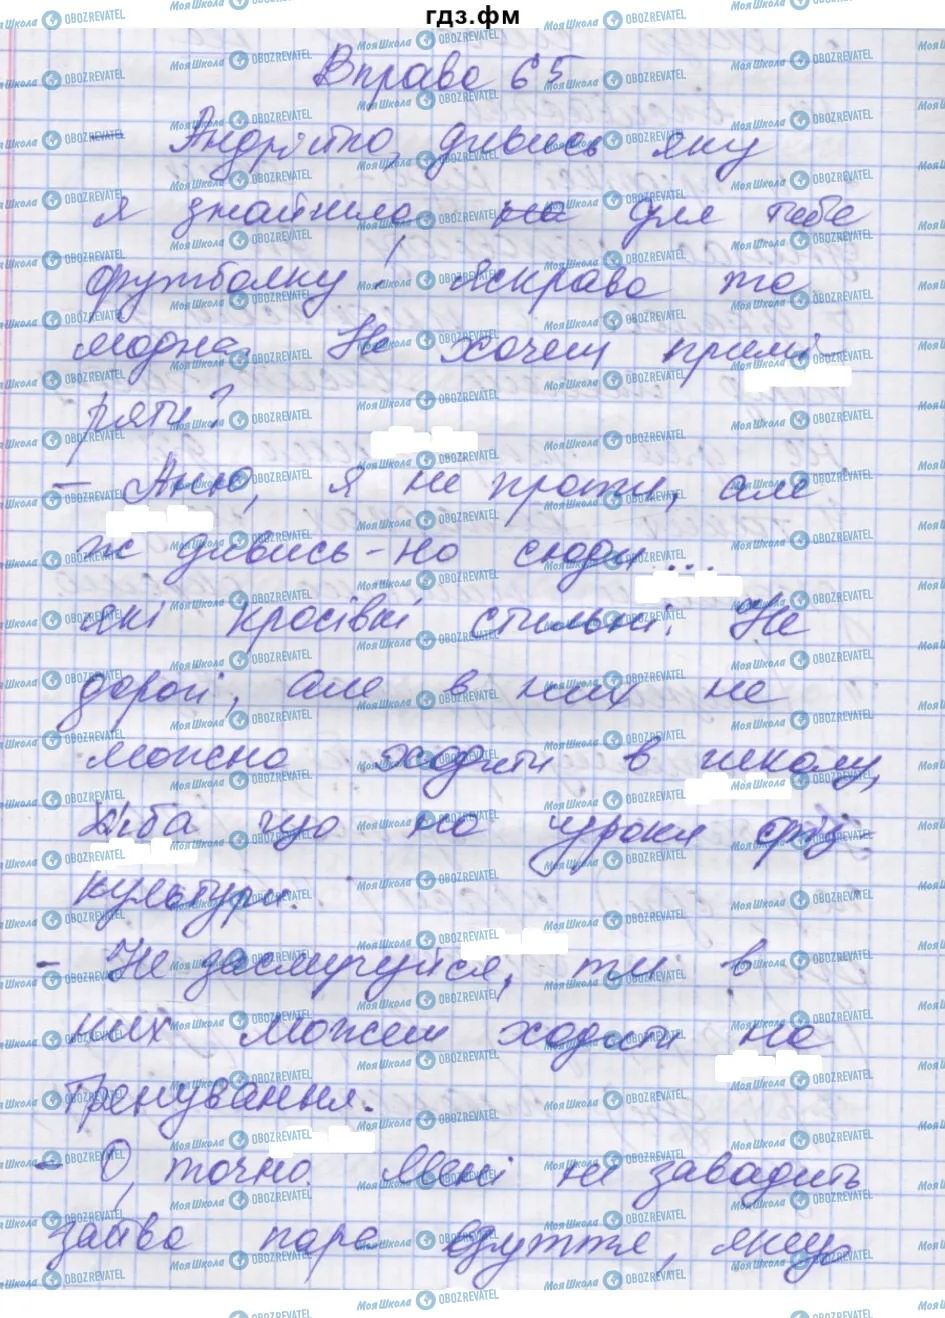 ГДЗ Українська мова 7 клас сторінка 65